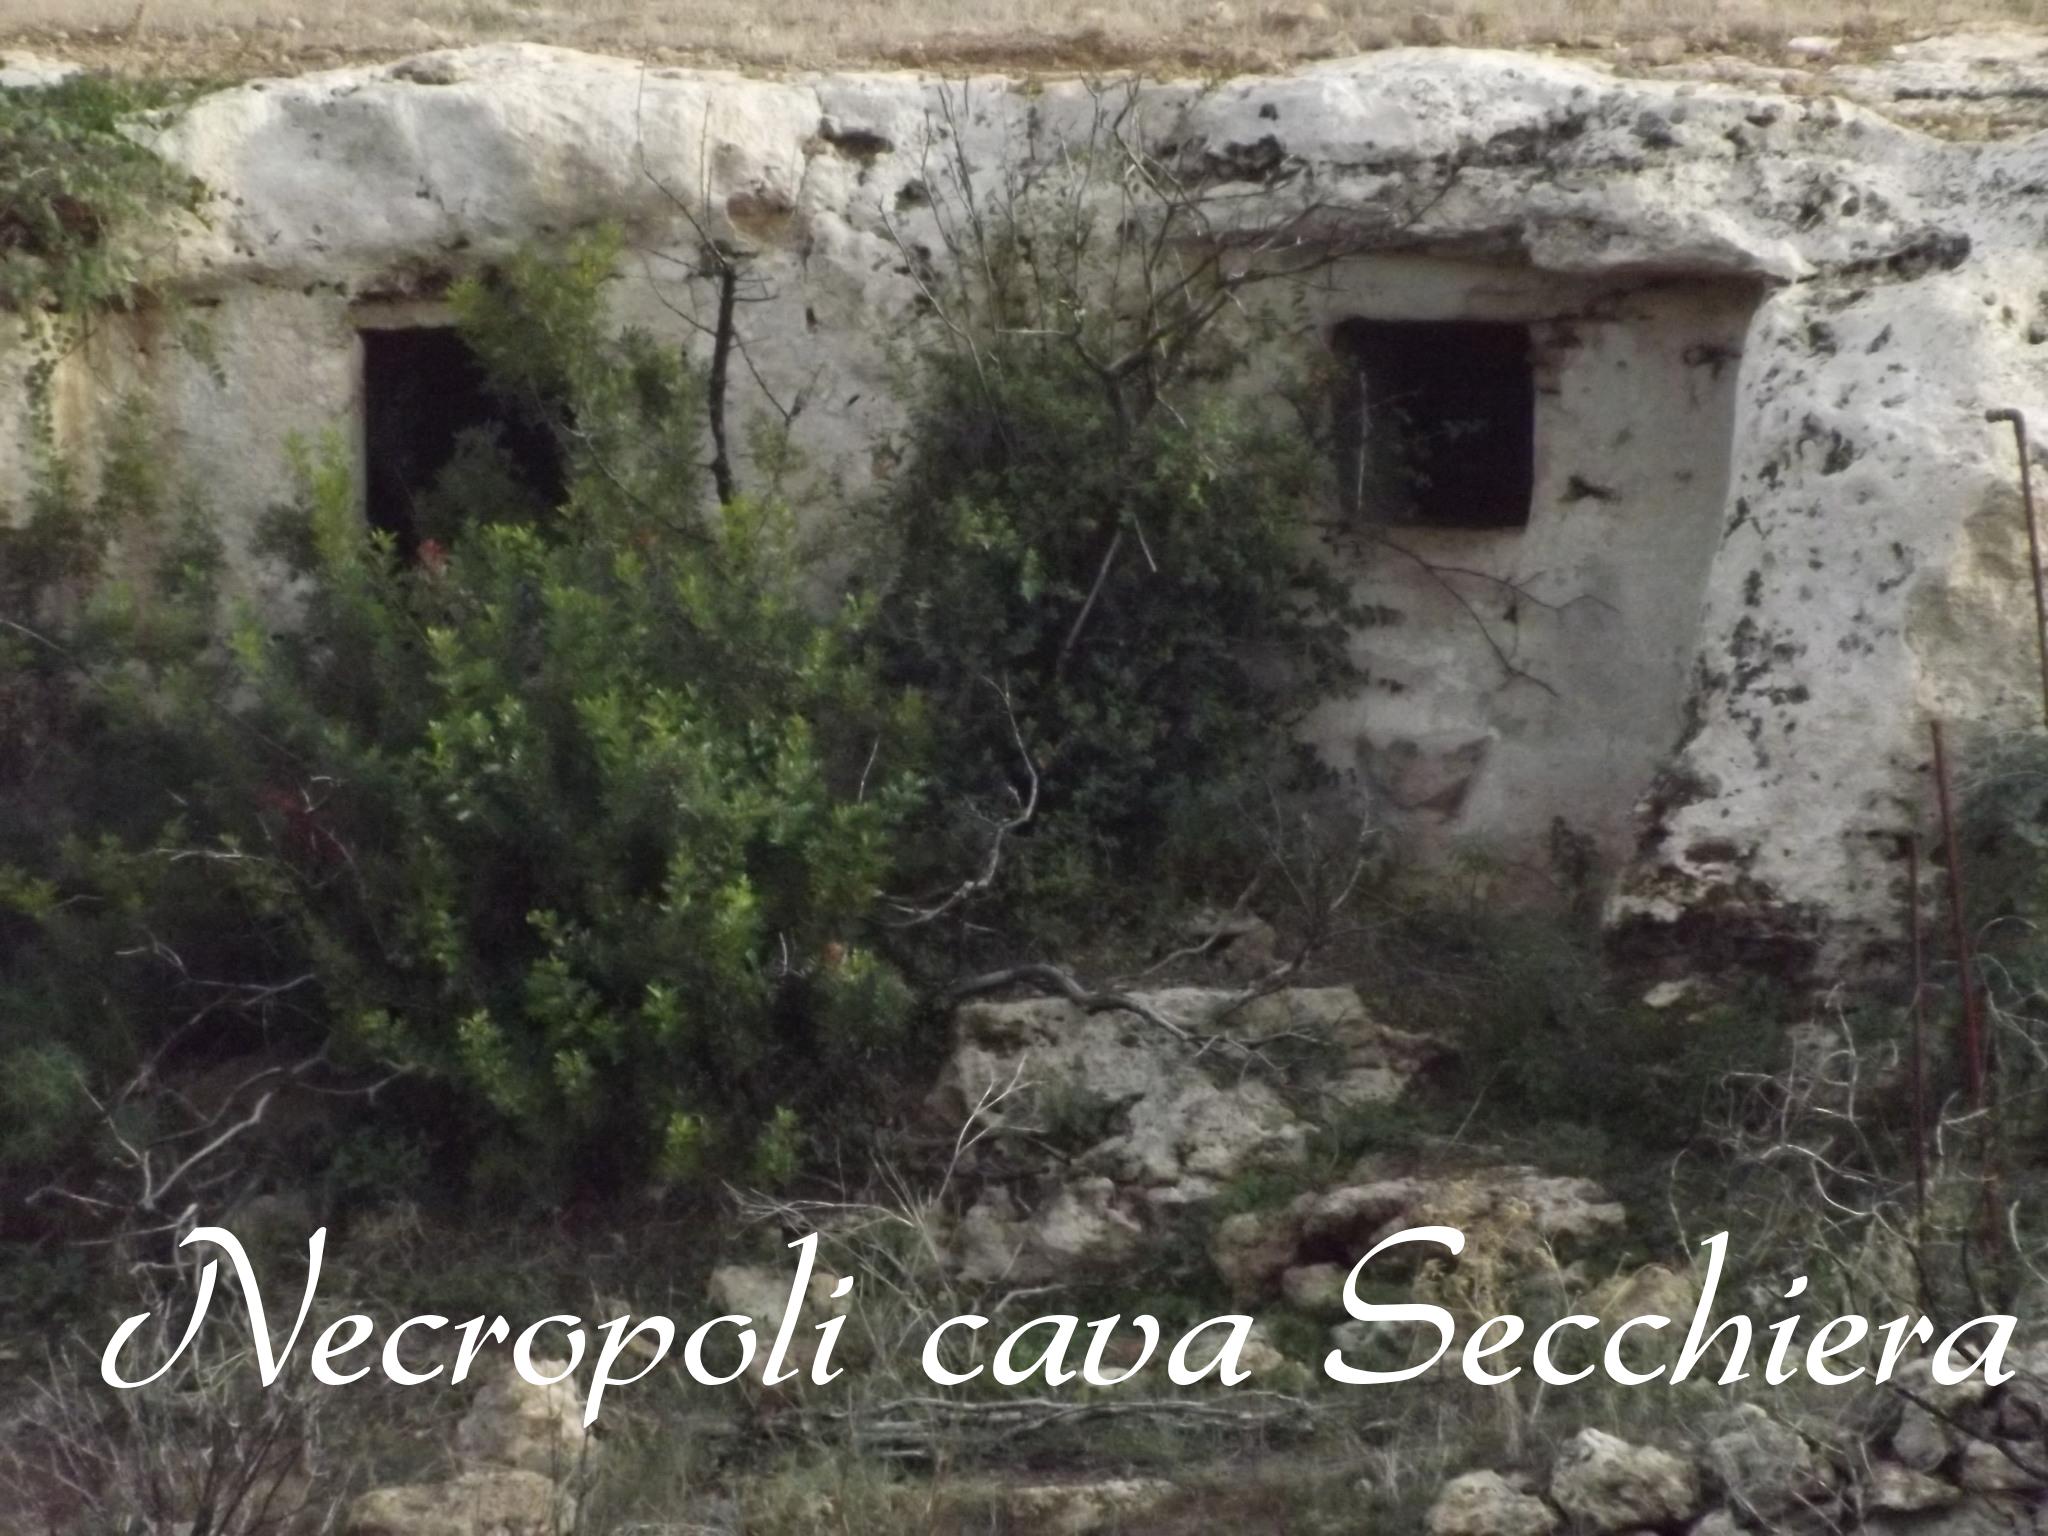 Necropoli cava Secchiera